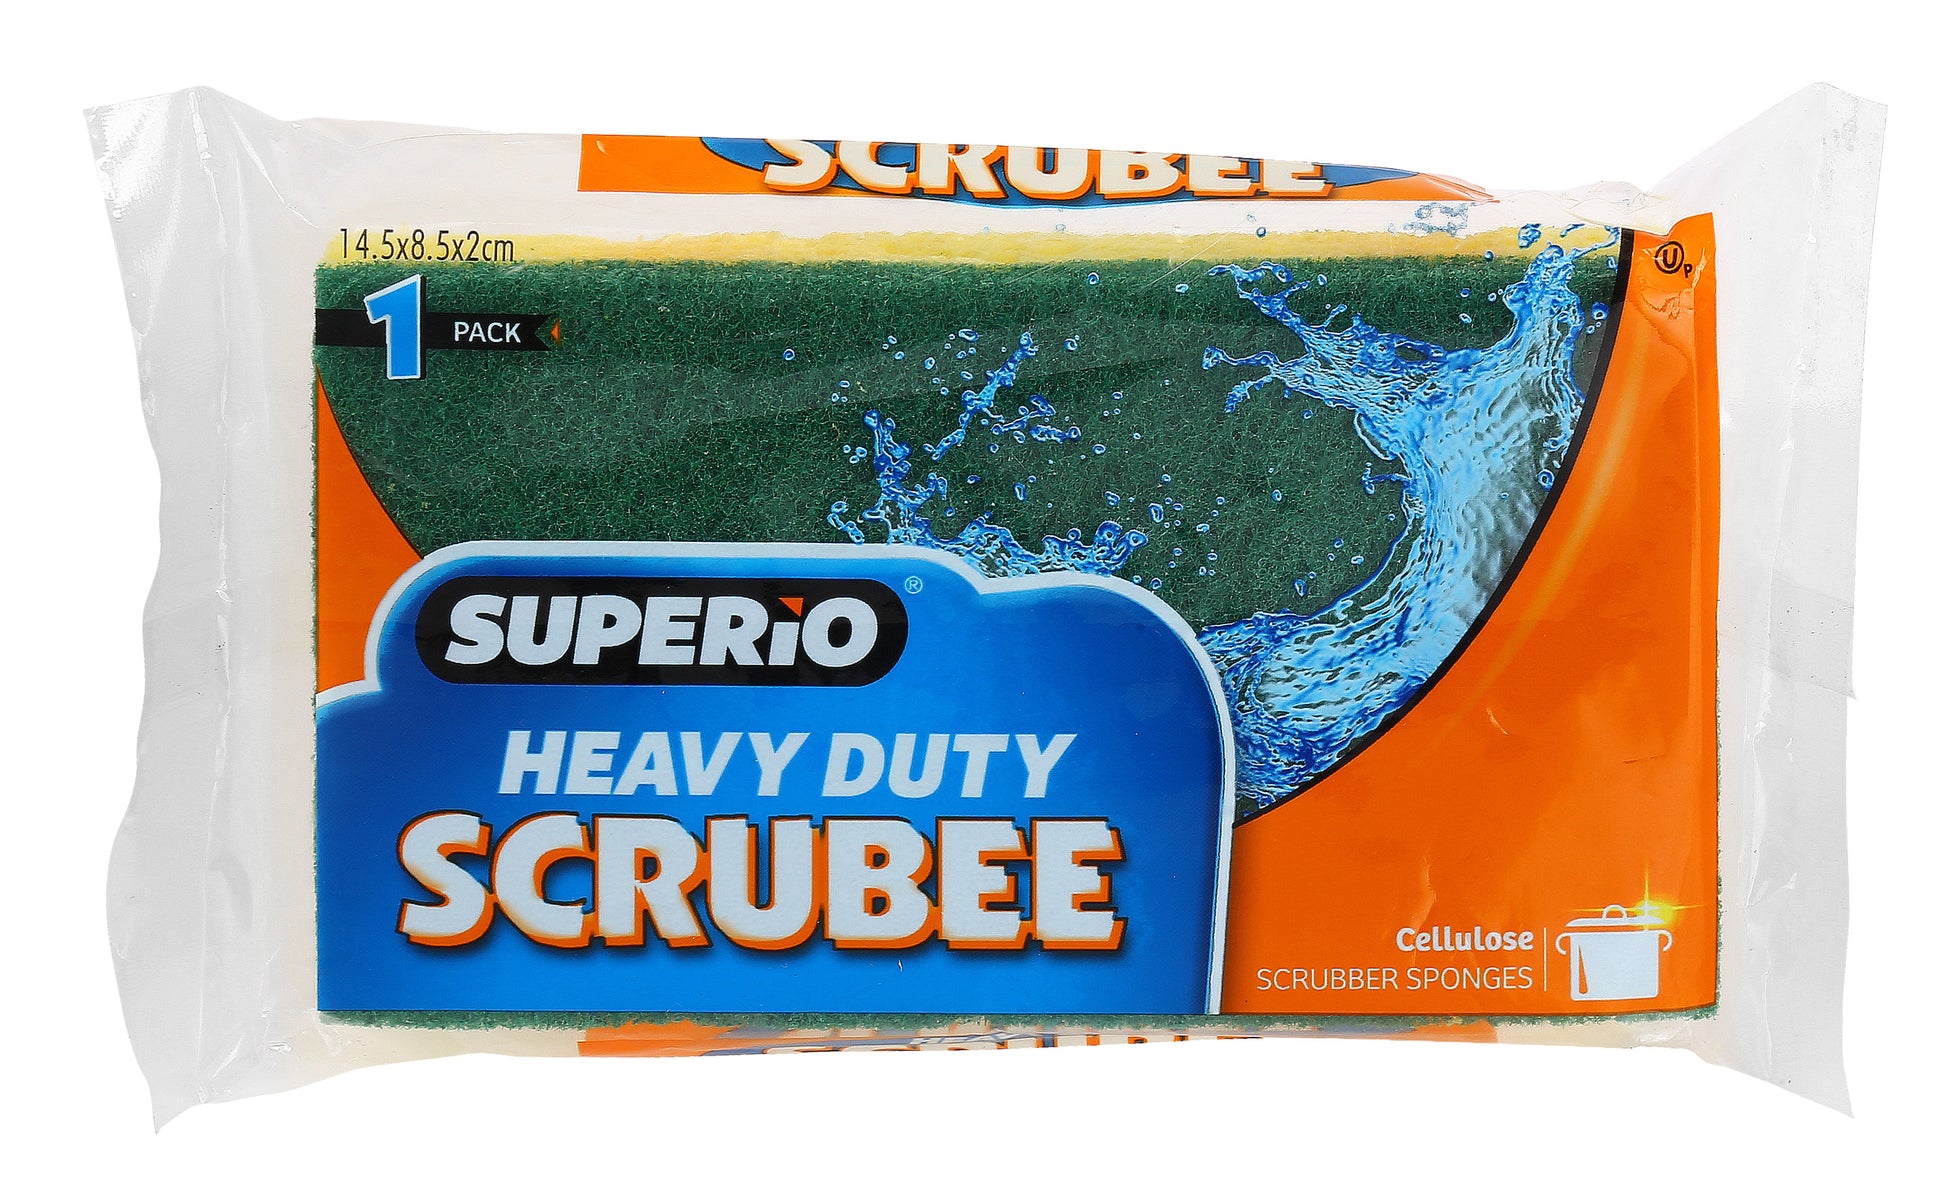 Aidea Non-Scratch Scrub Sponge, Heavy Duty Cellulose Sponge